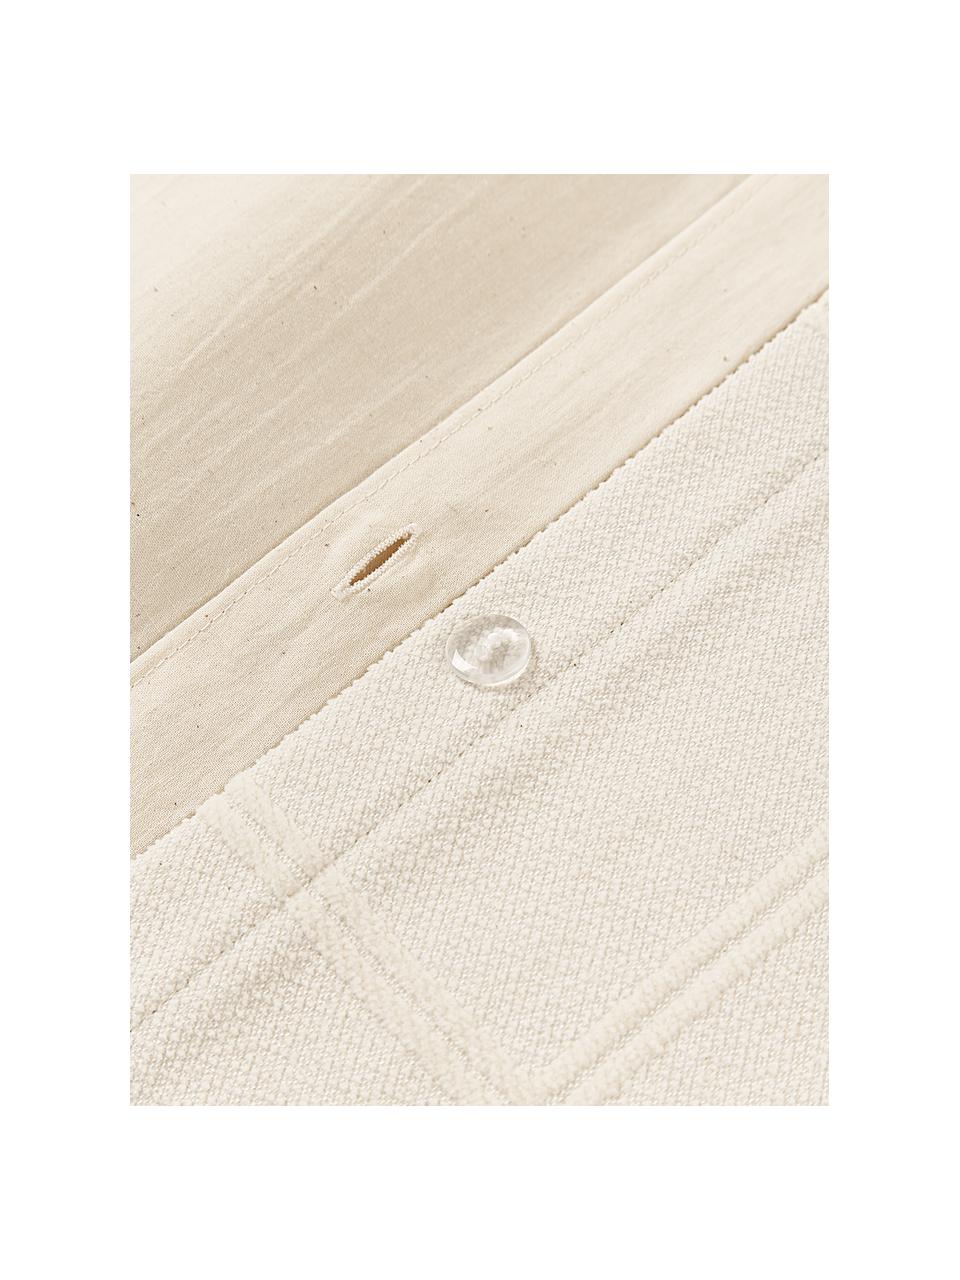 Bettdeckenbezug Vivienne mit getuftetem Karo-Muster, Vorderseite: Off White
Rückseite: Cremeweiß, B 200 x L 200 cm